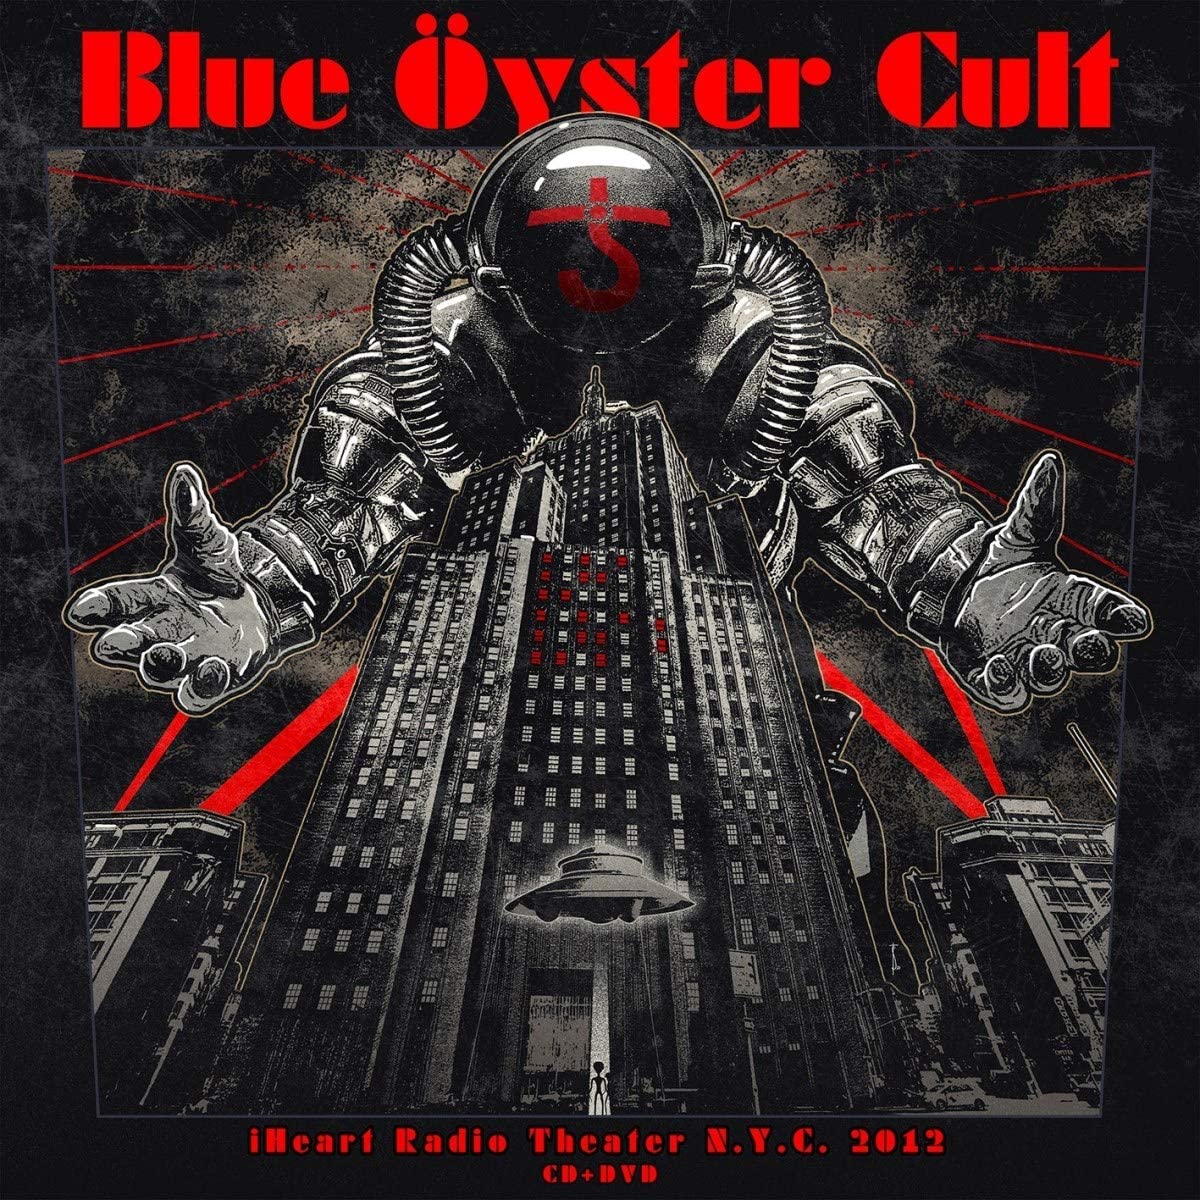 Blue Oyster Cult - Iheart Radio Theater N.Y.C. 2012 - 2LP